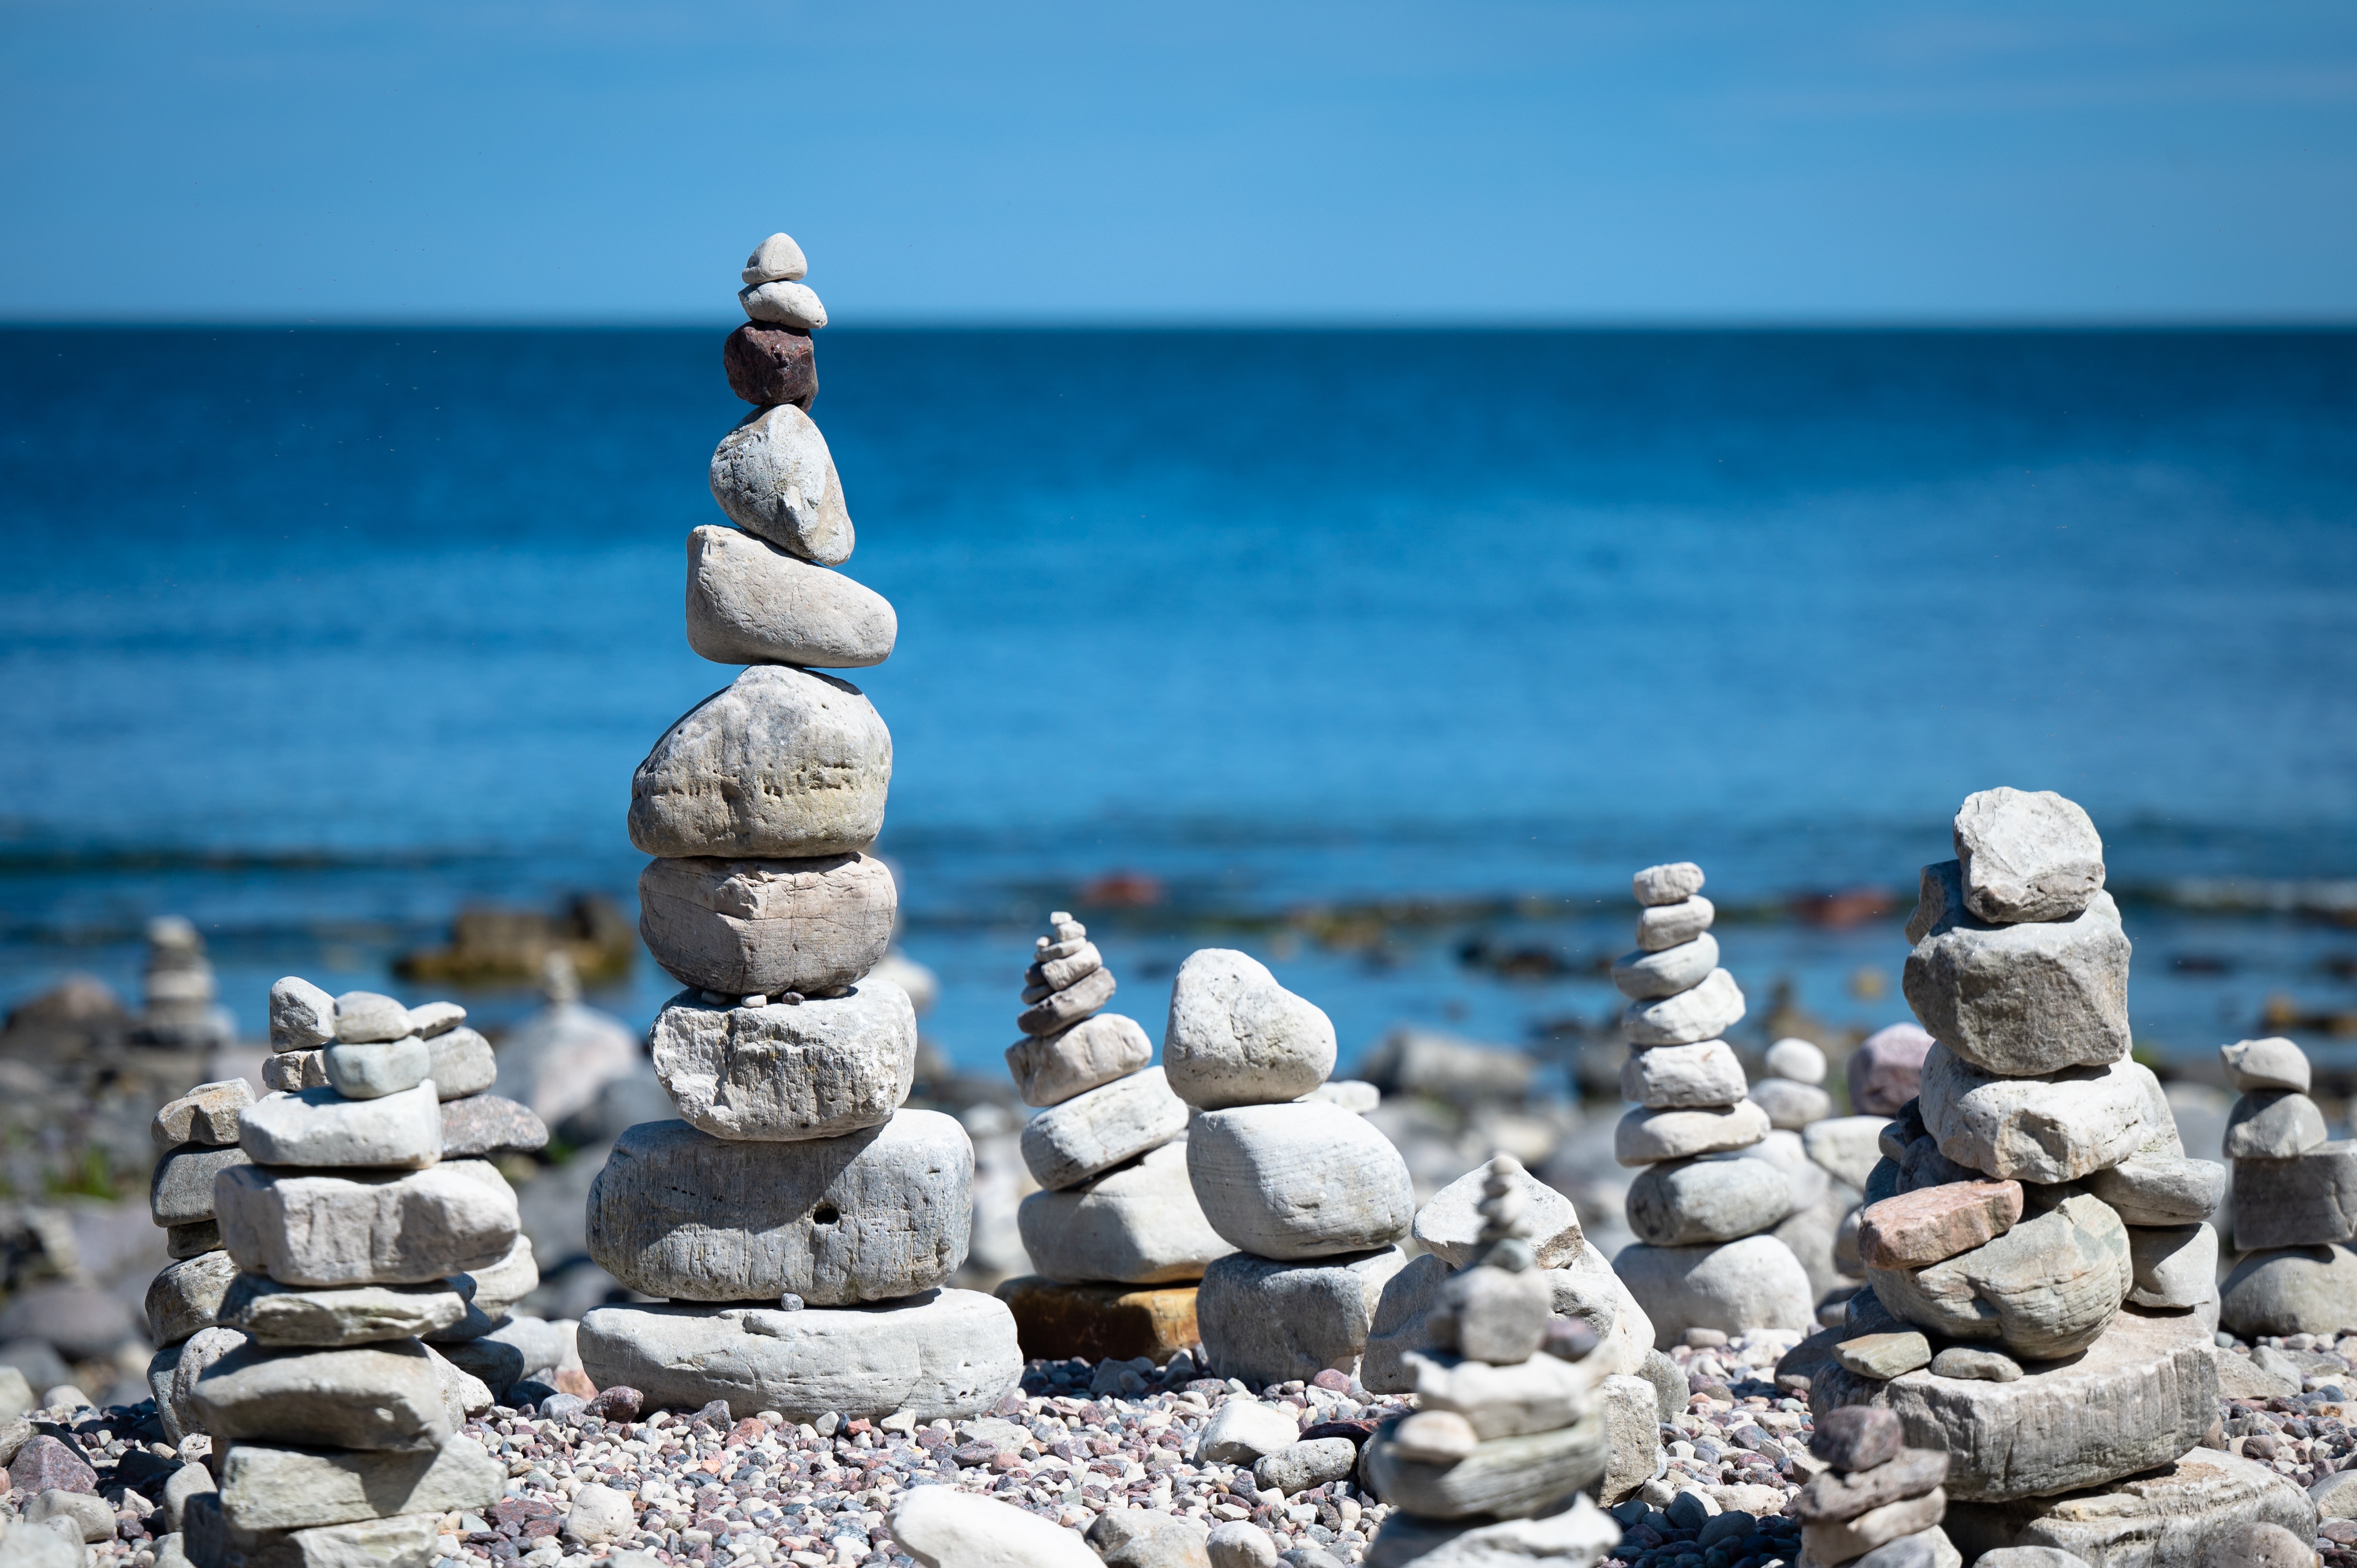 Steine und Steinskulpturen auf dem Strand am Meer